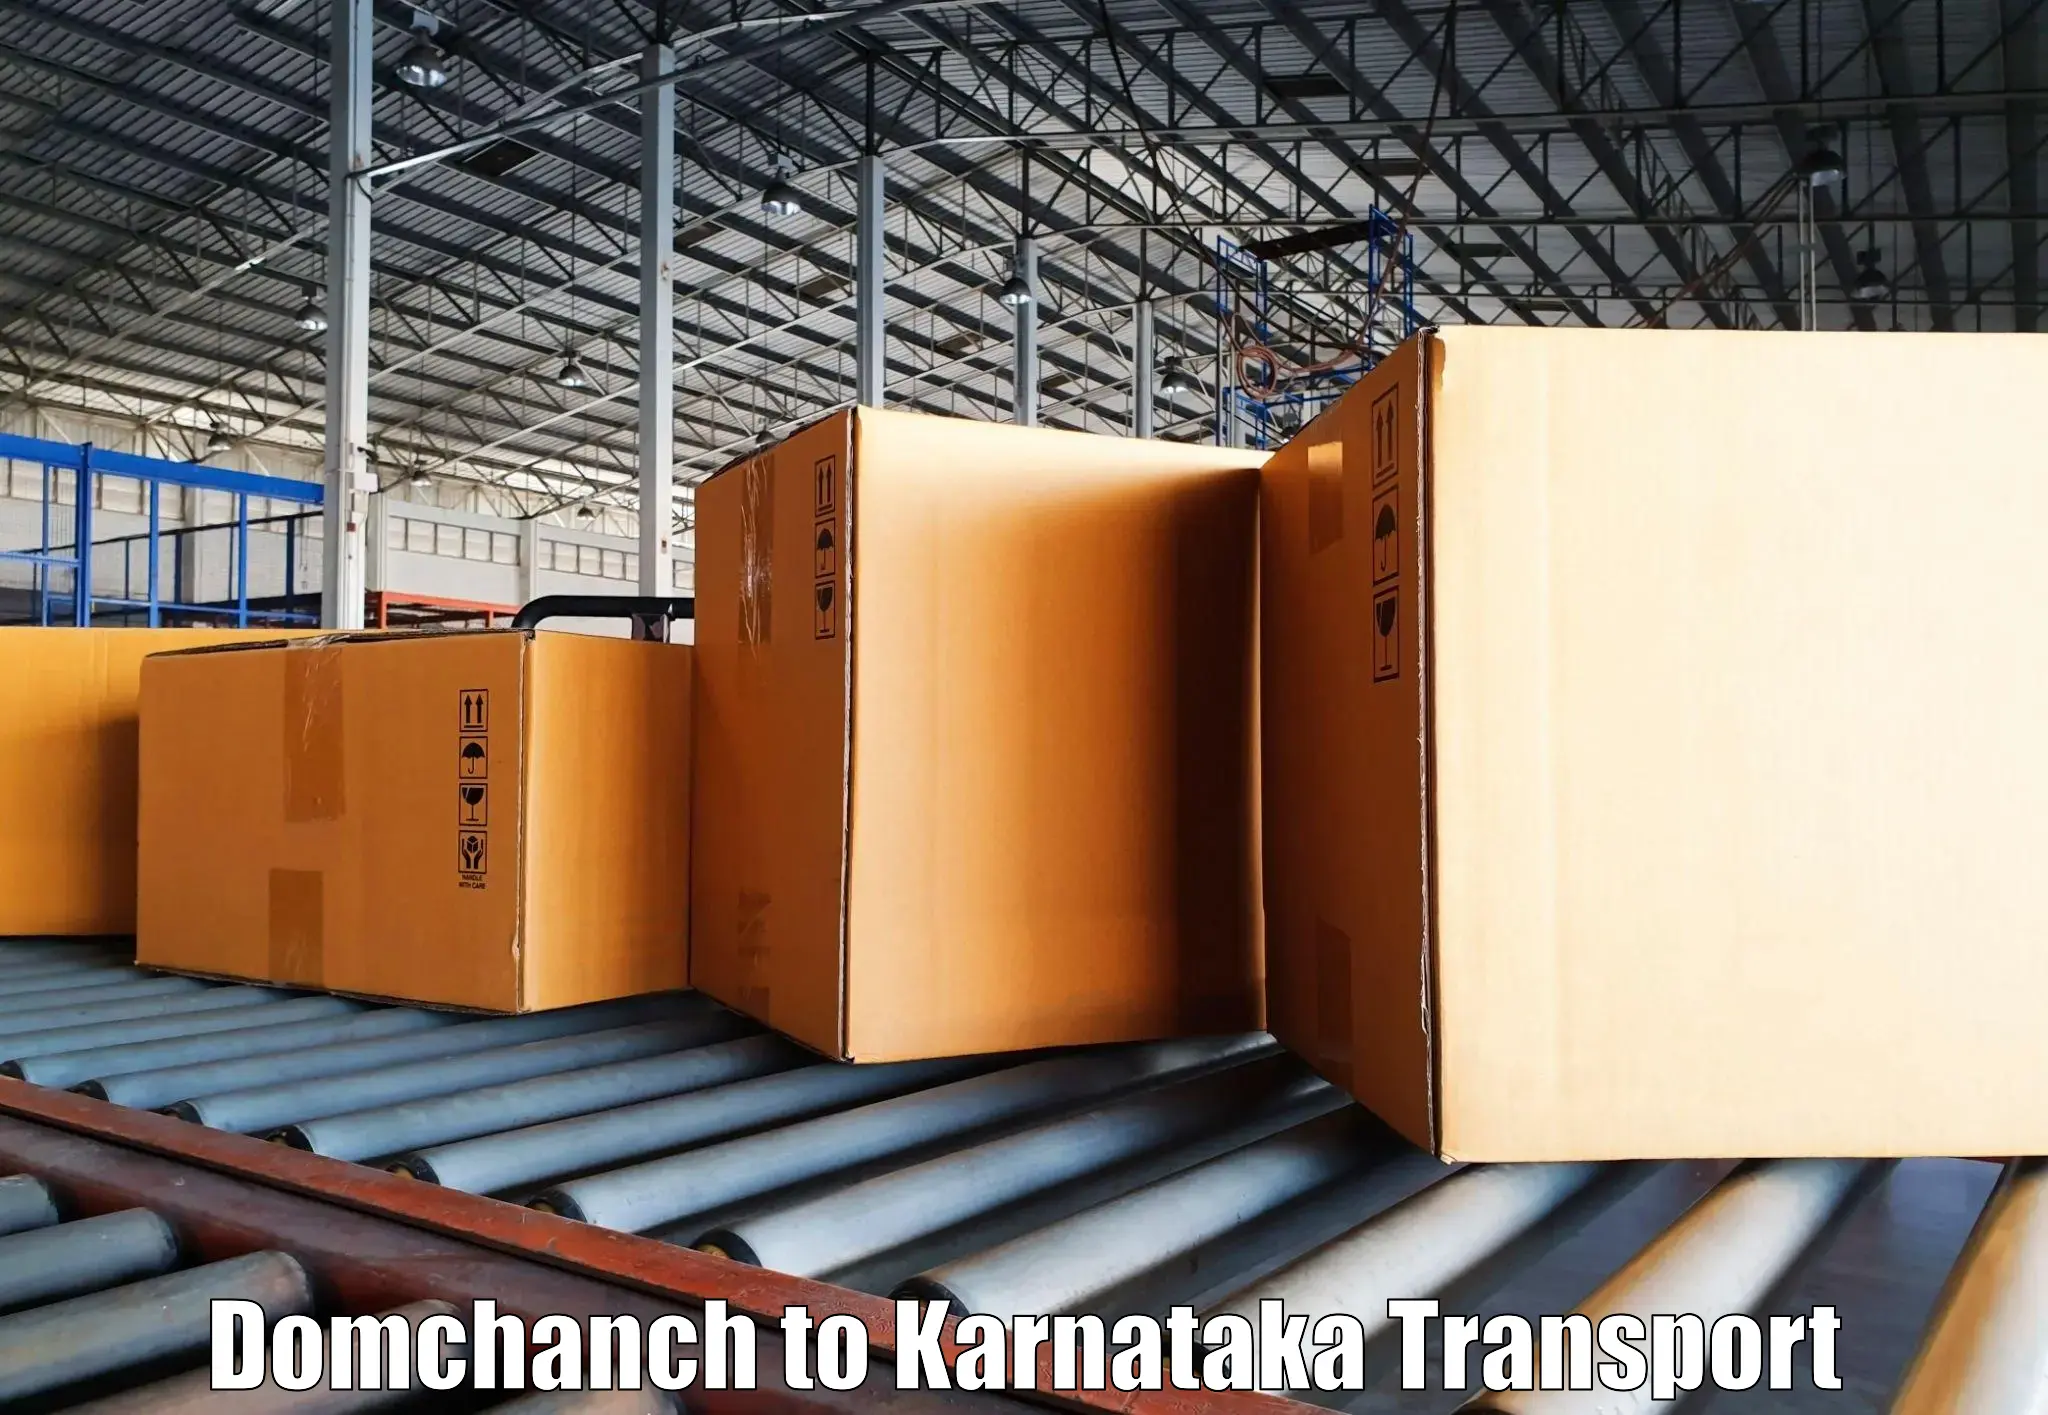 Transport in sharing Domchanch to Toranagallu